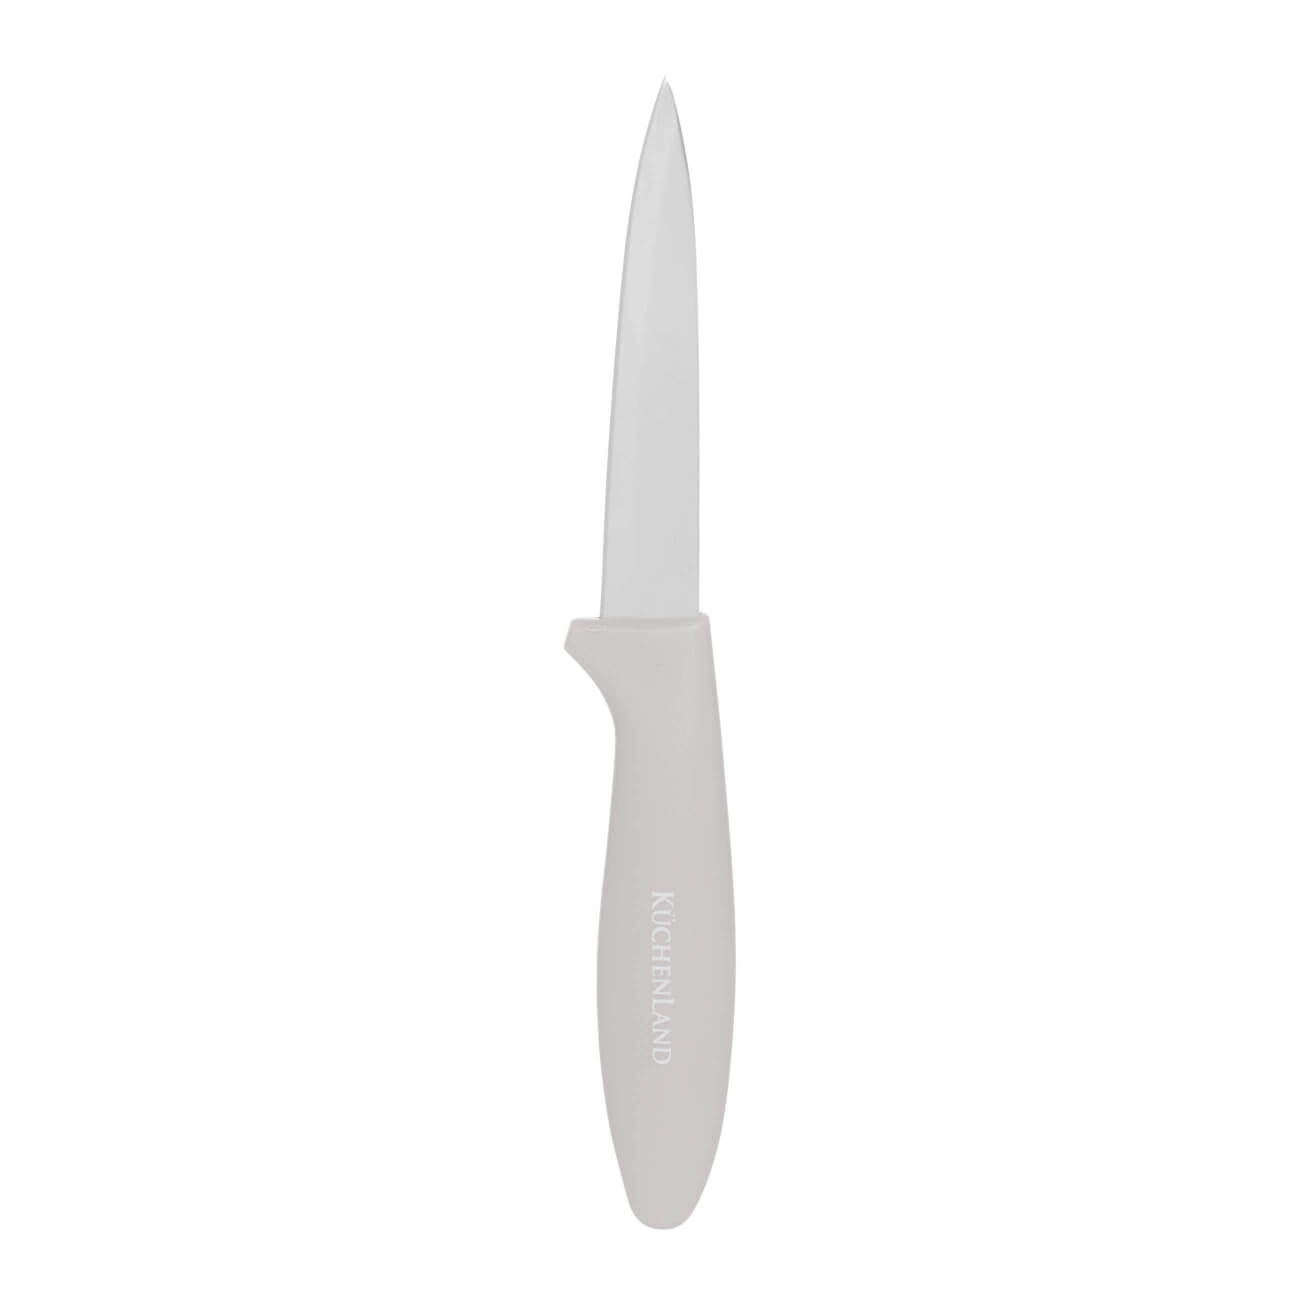 Нож для чистки овощей, 9 см, сталь/пластик, серо-коричневый, Regular